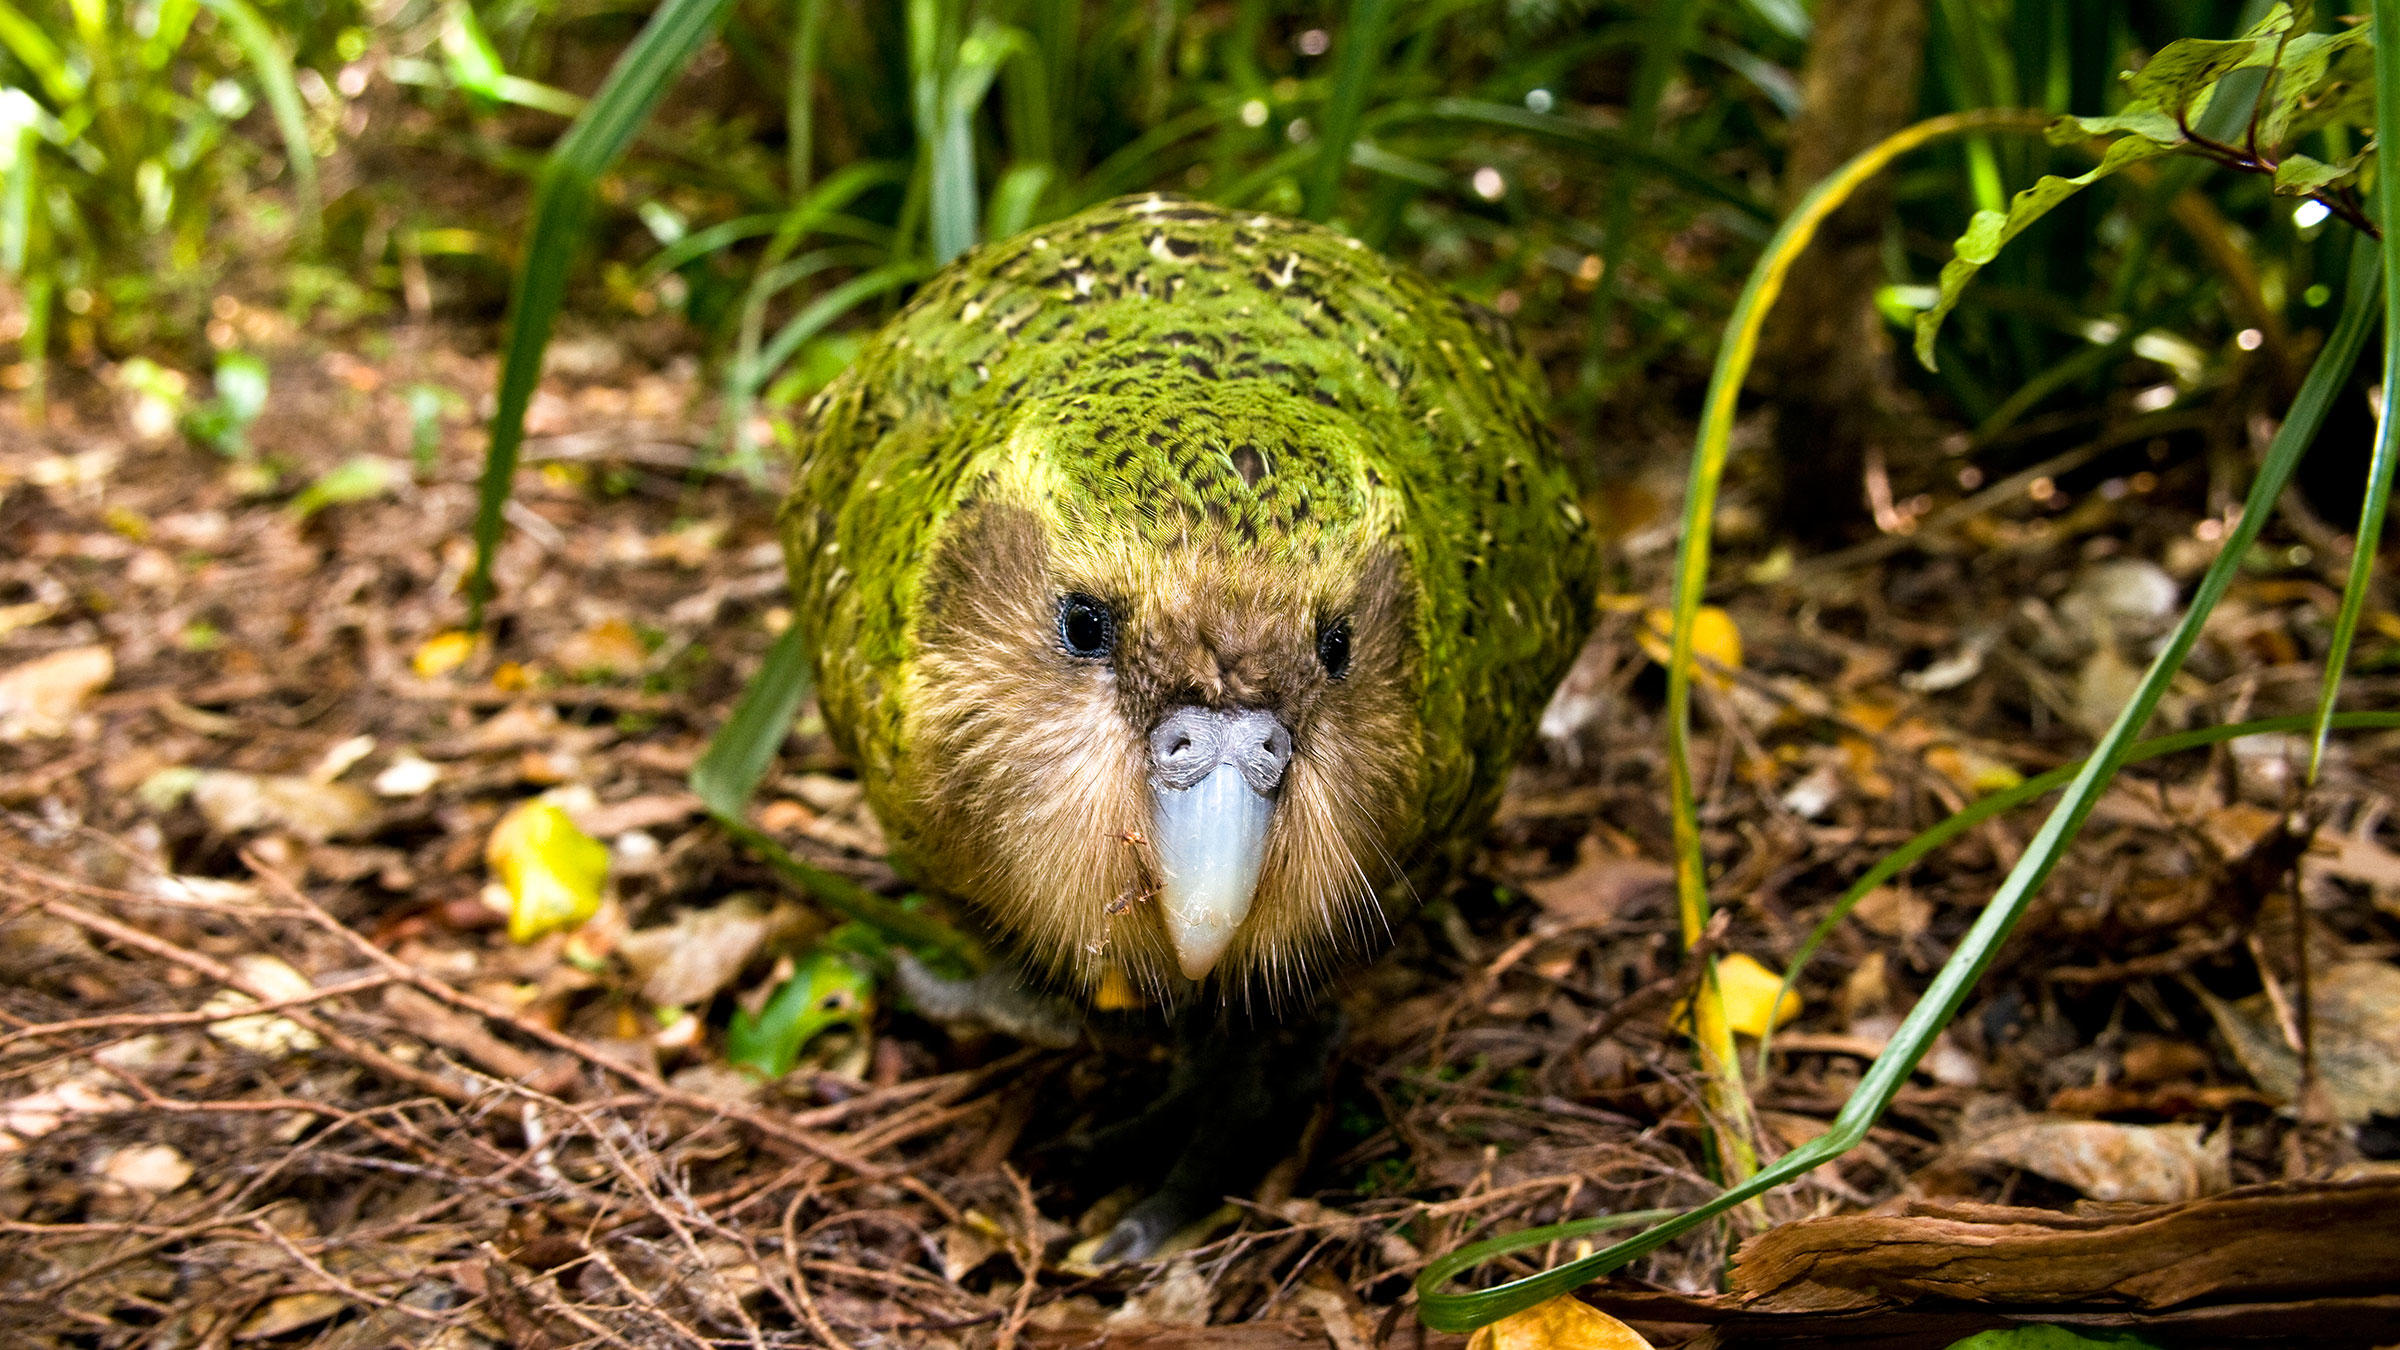 سنگین ترین طوطی جهان که پرنده سال ۲۰۲۰ نیوزیلند شد+ عکس